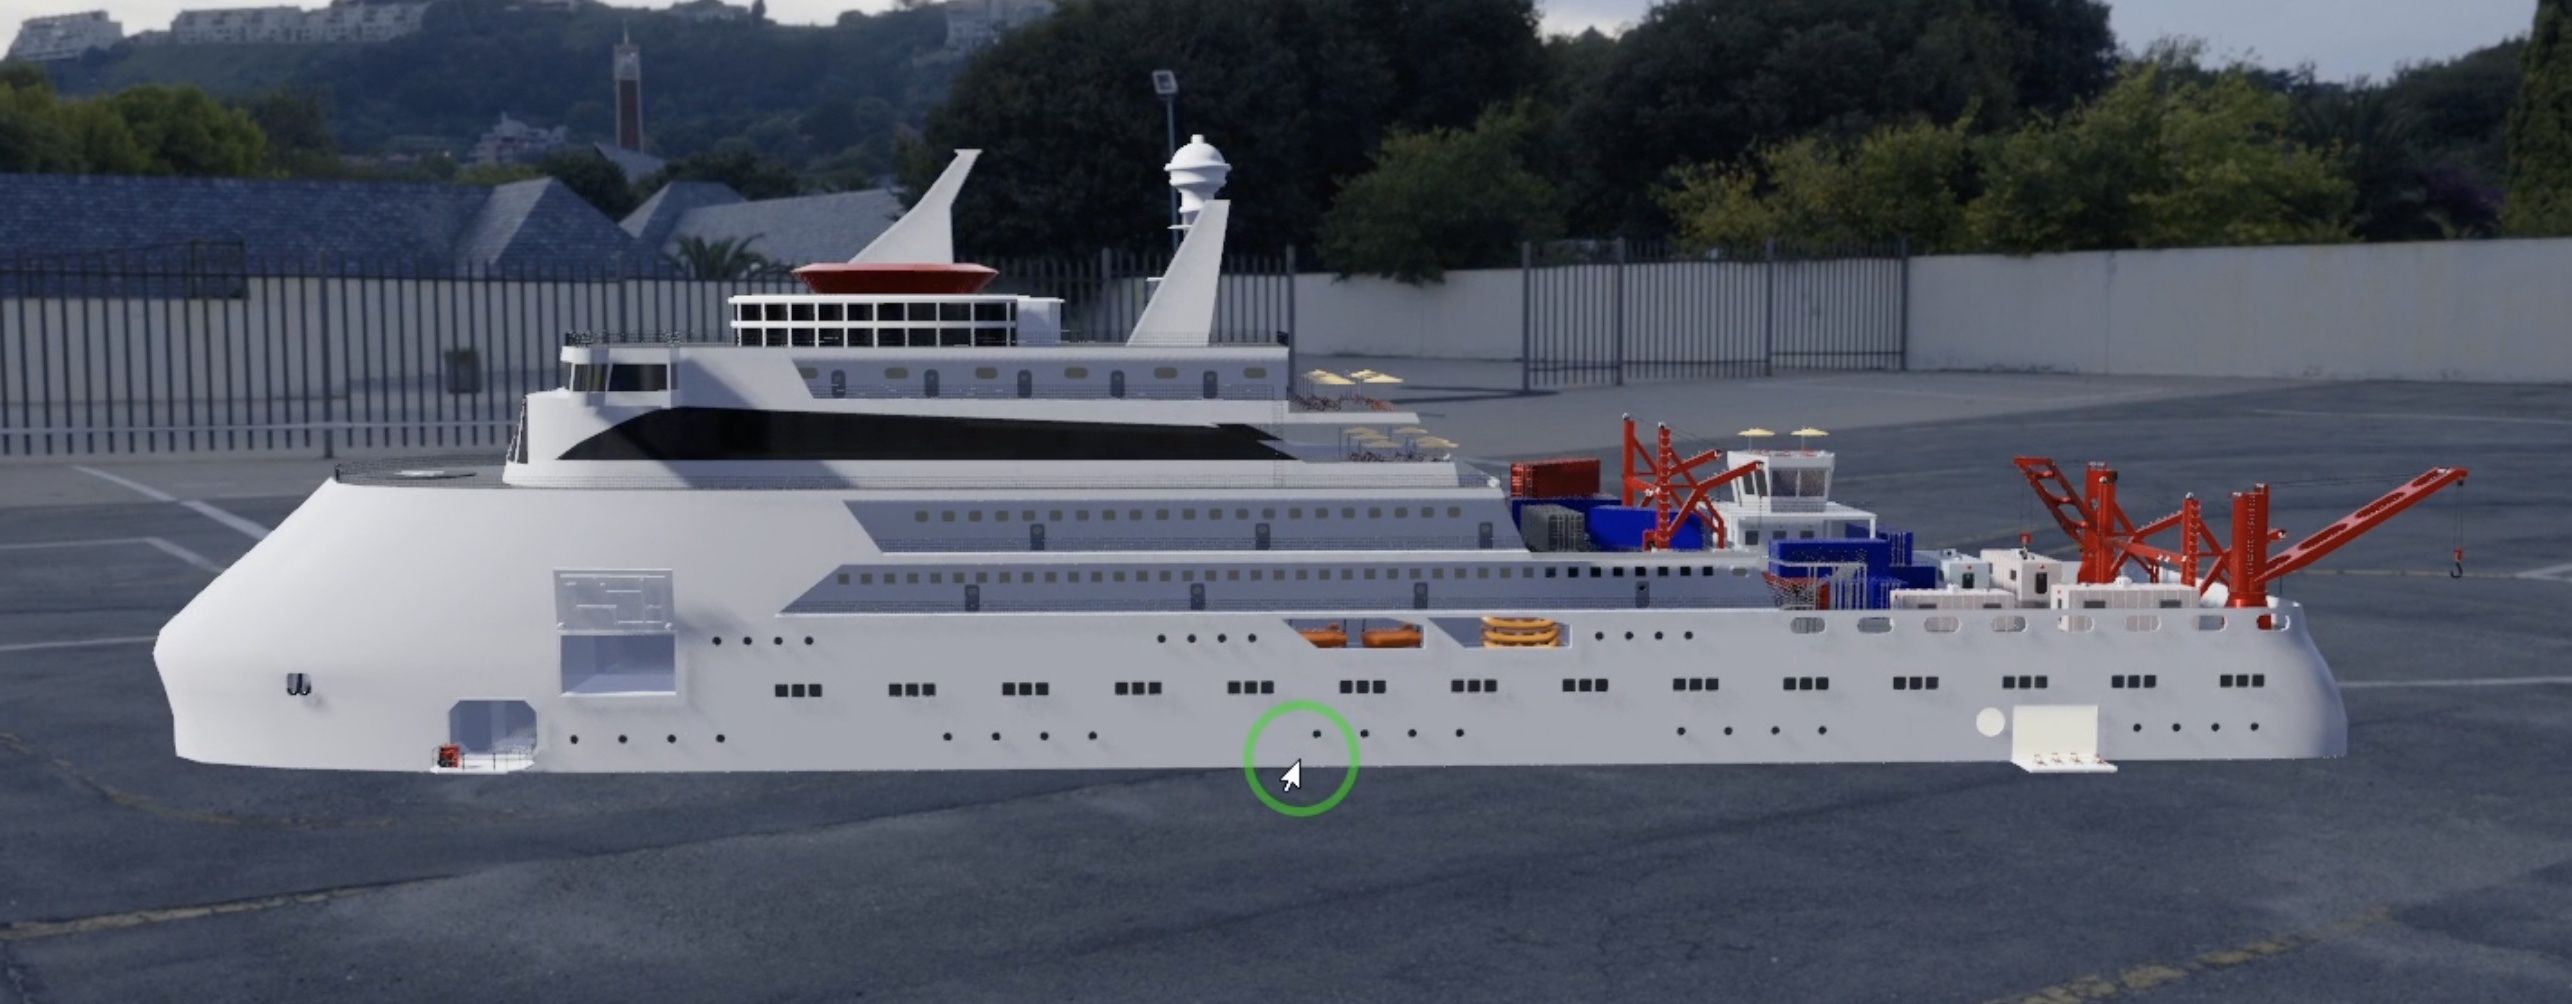 Rendering 3D Animation Werft ein Forschungsschiff entsteht